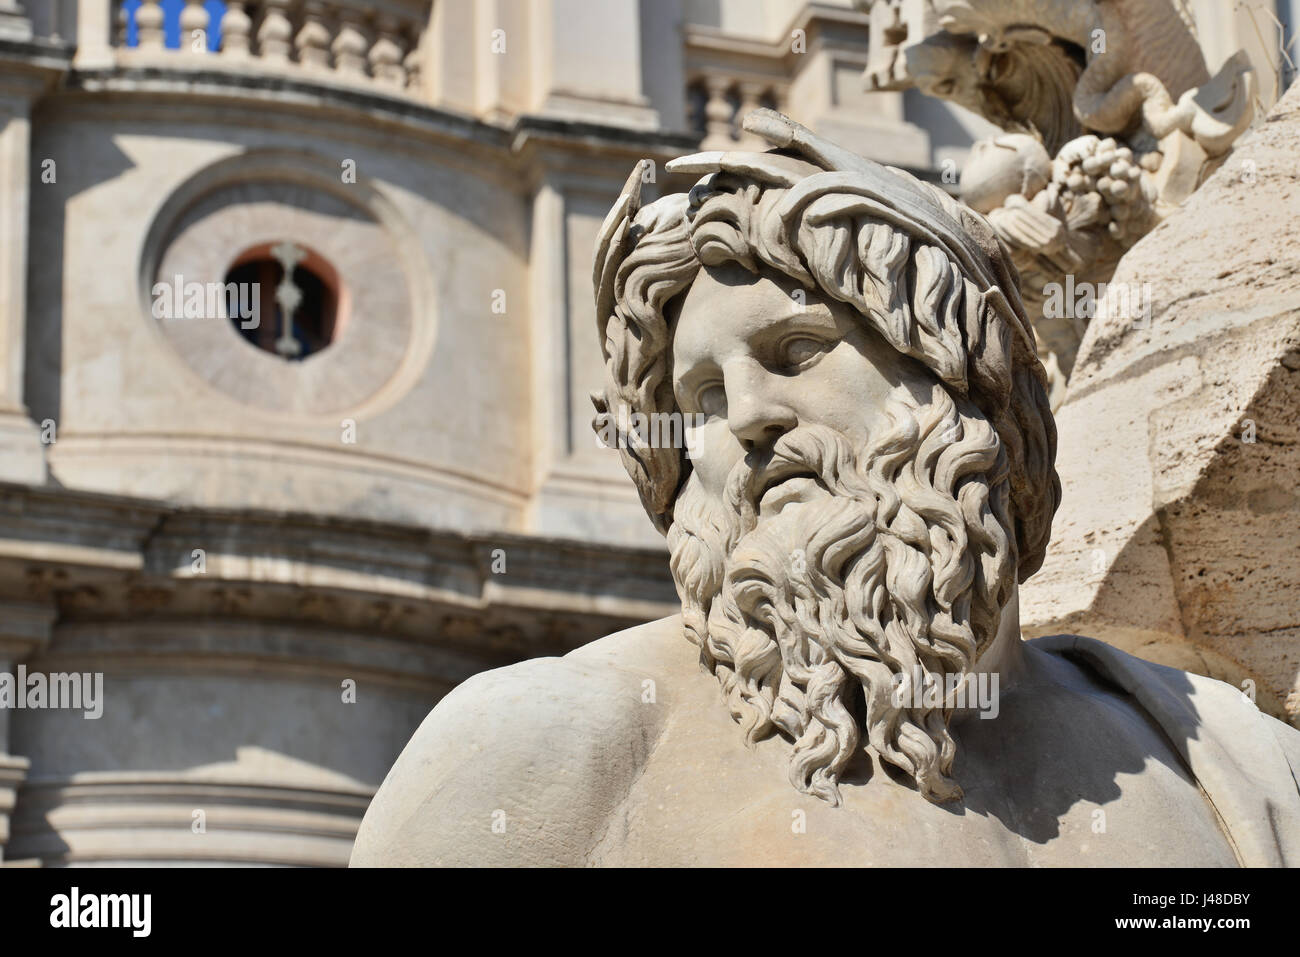 En tête du Gange dieu statue de fontaine baroque de quatre River dans le centre historique de Rome Banque D'Images